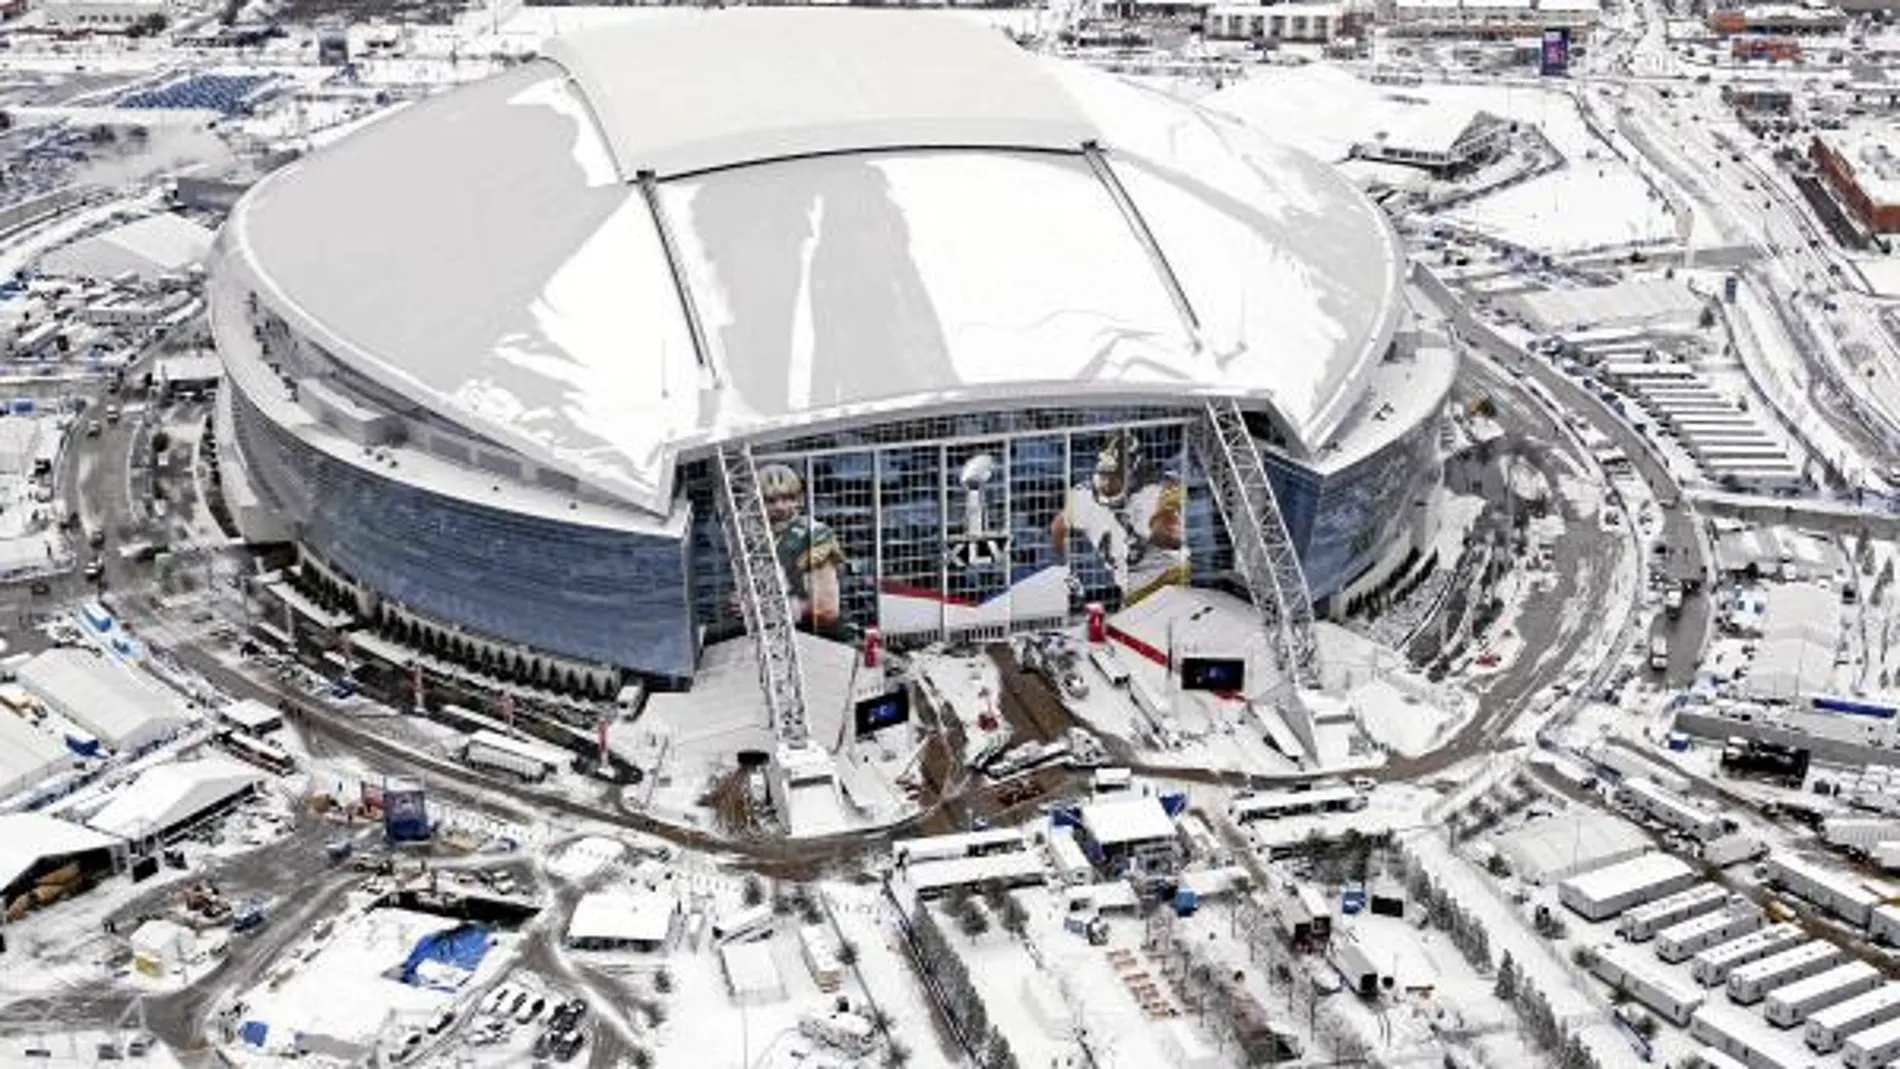 La nieve invade el estado donde se celebrará la final de la Superbowl entre los Steelers y los Packers